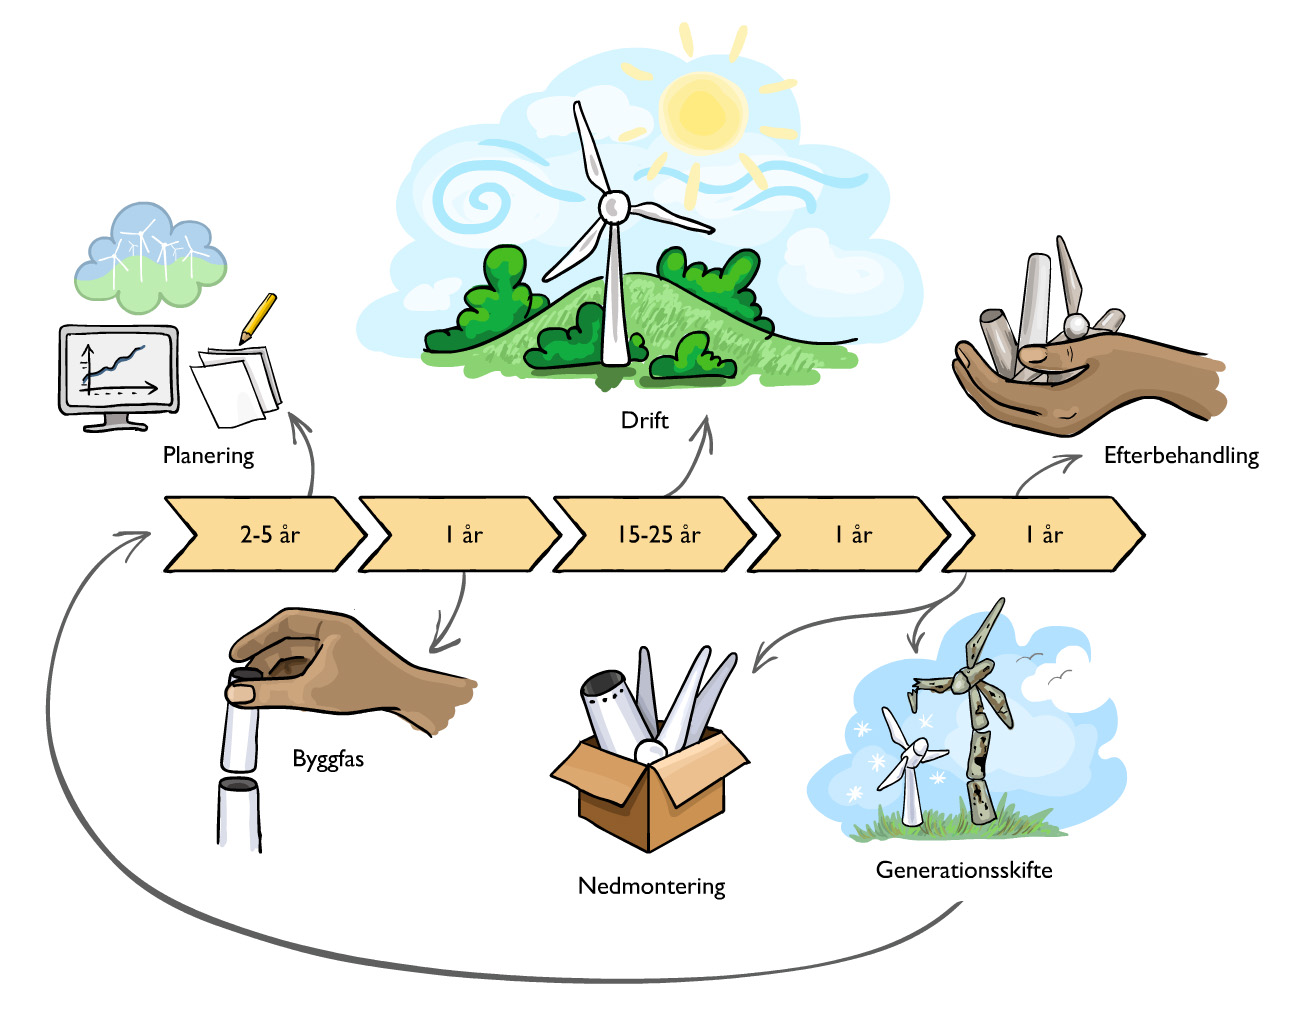 Interaktiv bild som visar vindkraftens livscykel: planering, byggfas, drift, nedmontering, efterbehandling och generationsskifte